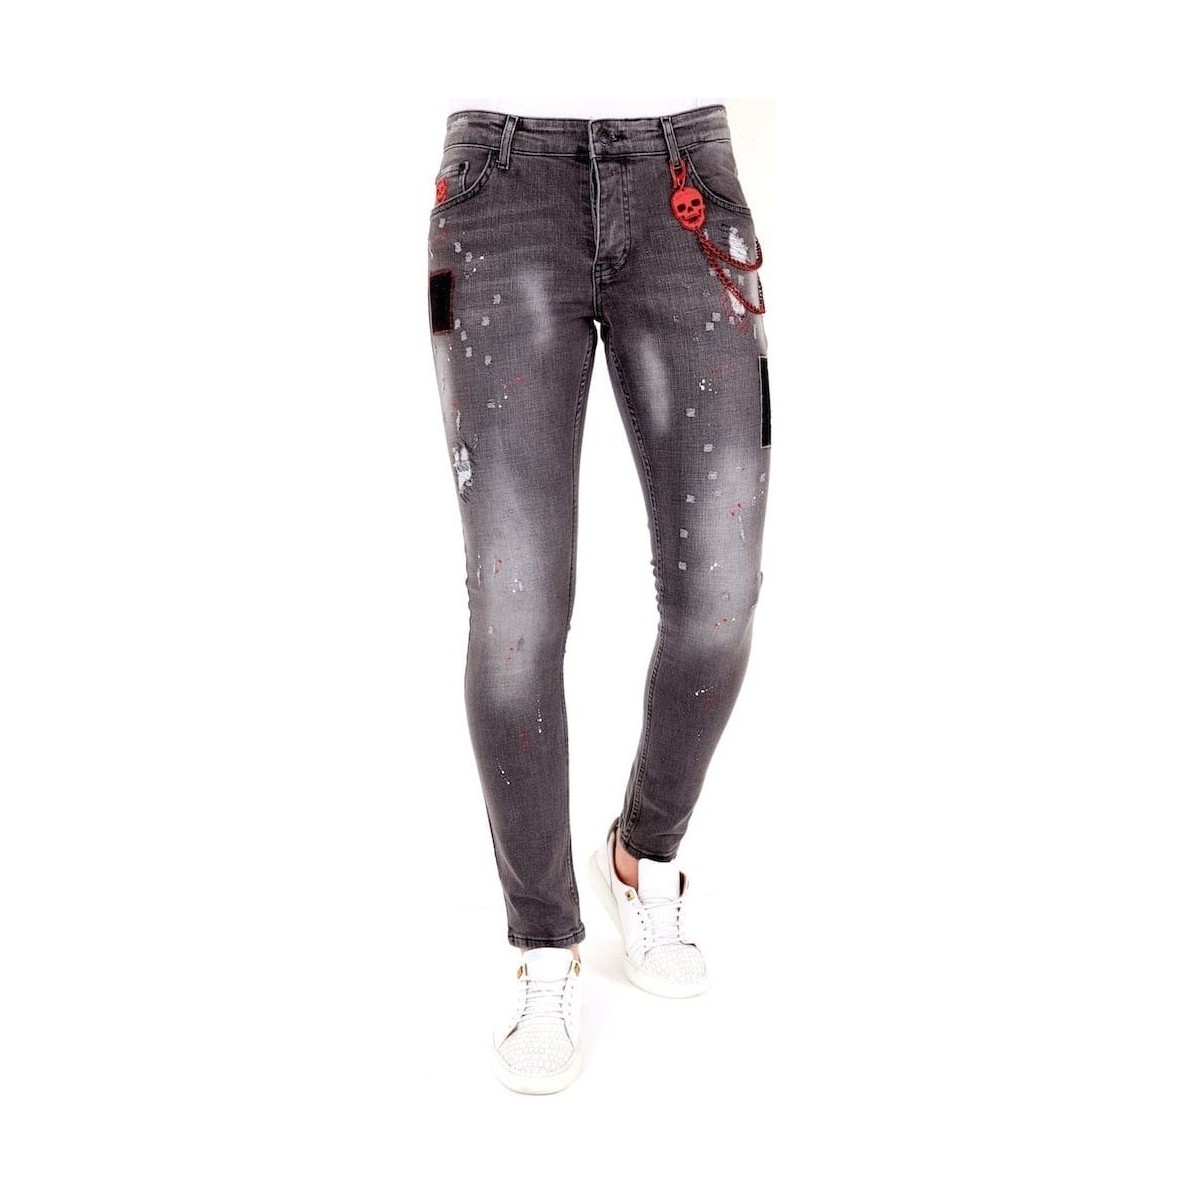 Textiel Heren Skinny jeans Lf Grijze Jeans Scheuren Grijs